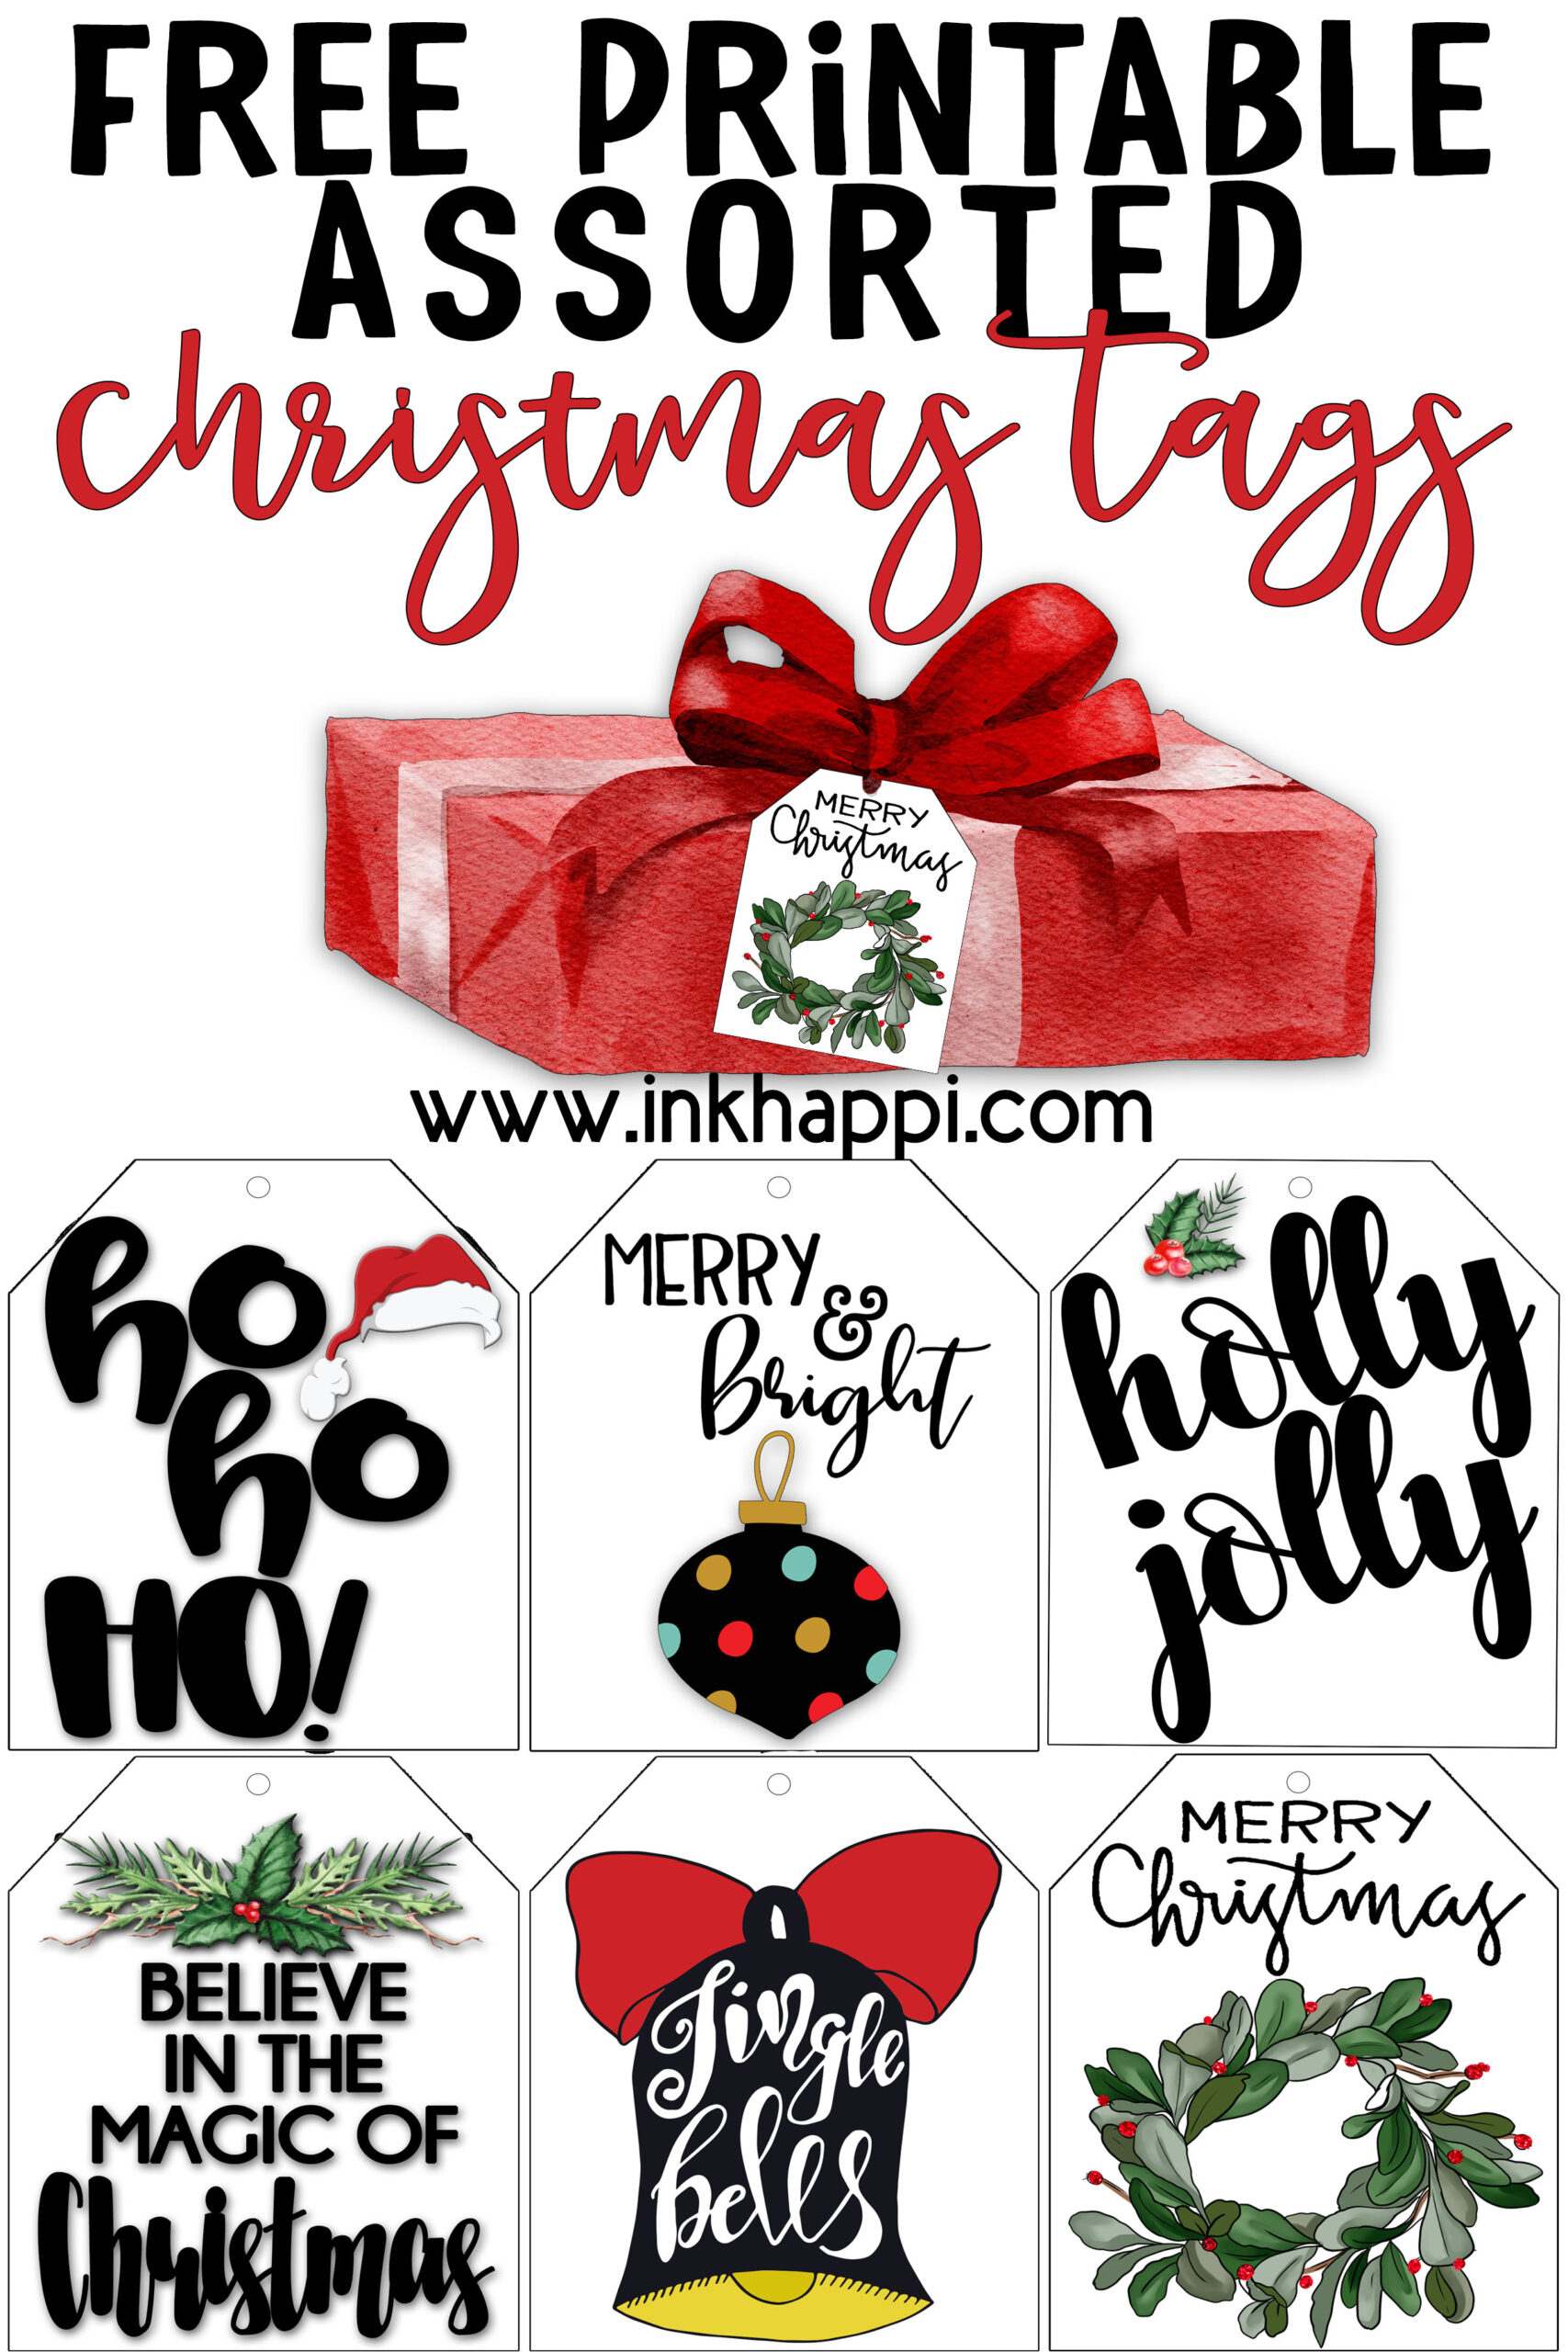 Free printable assorted cute Christmas tags. 6 styles including Santa hohoho gift tags. @freeprintables #gifttags #Christmas